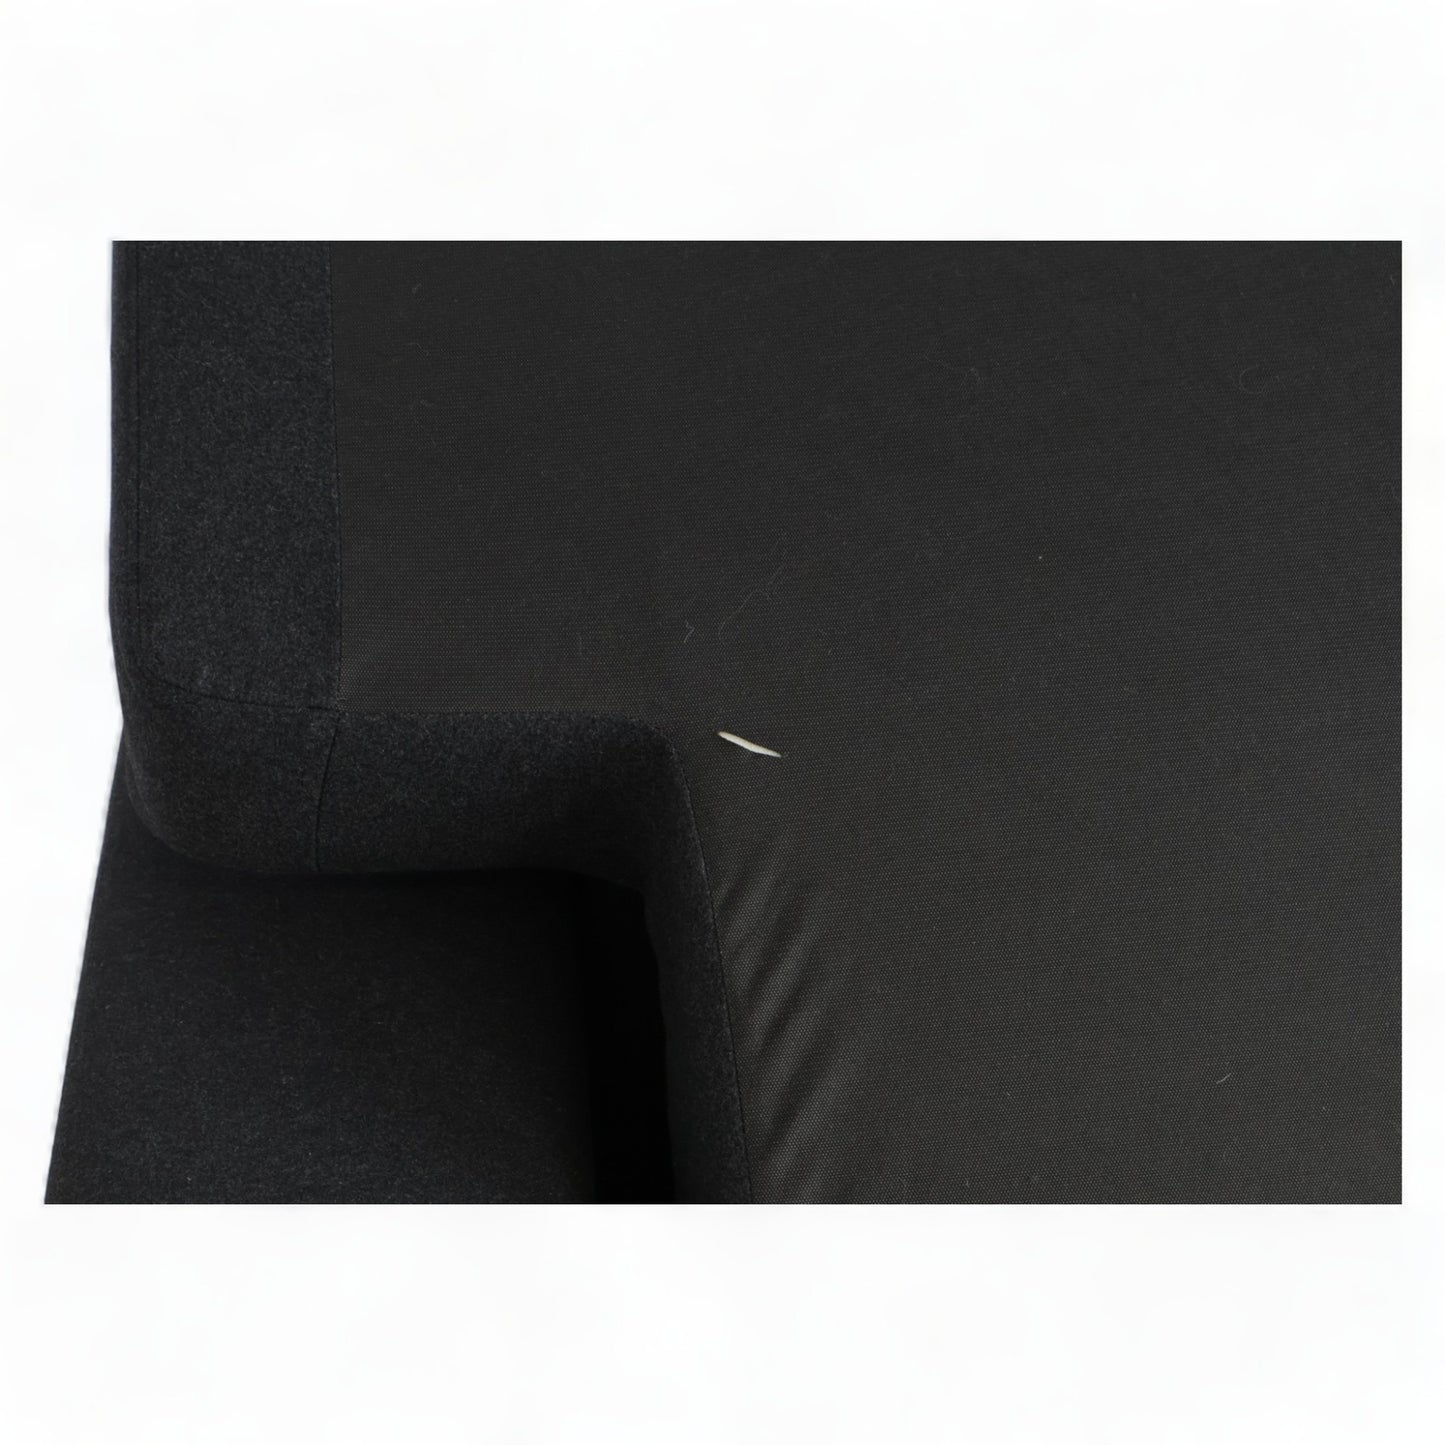 Nyrenset | Sort Bolia Sepia sofa med sjeselong